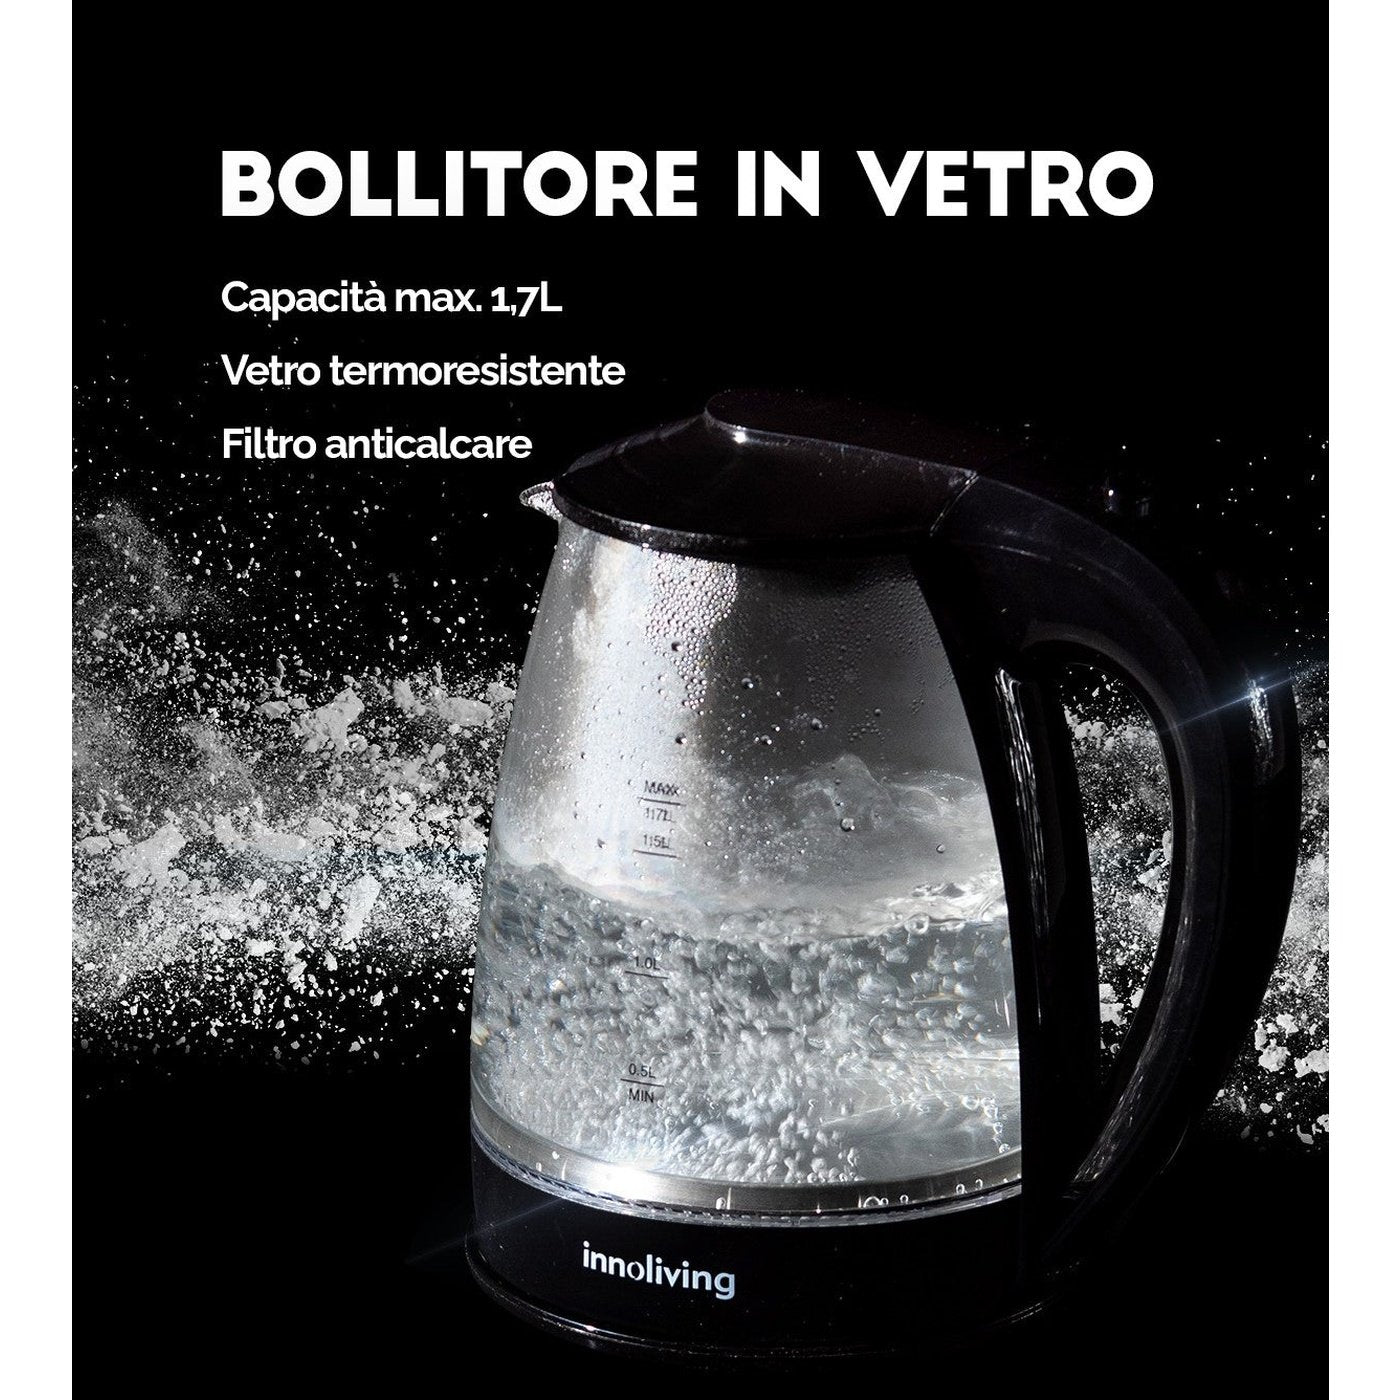 Bollitore in Vetro INN-724, 2200 W, 10 Cups, Vetro, Nero